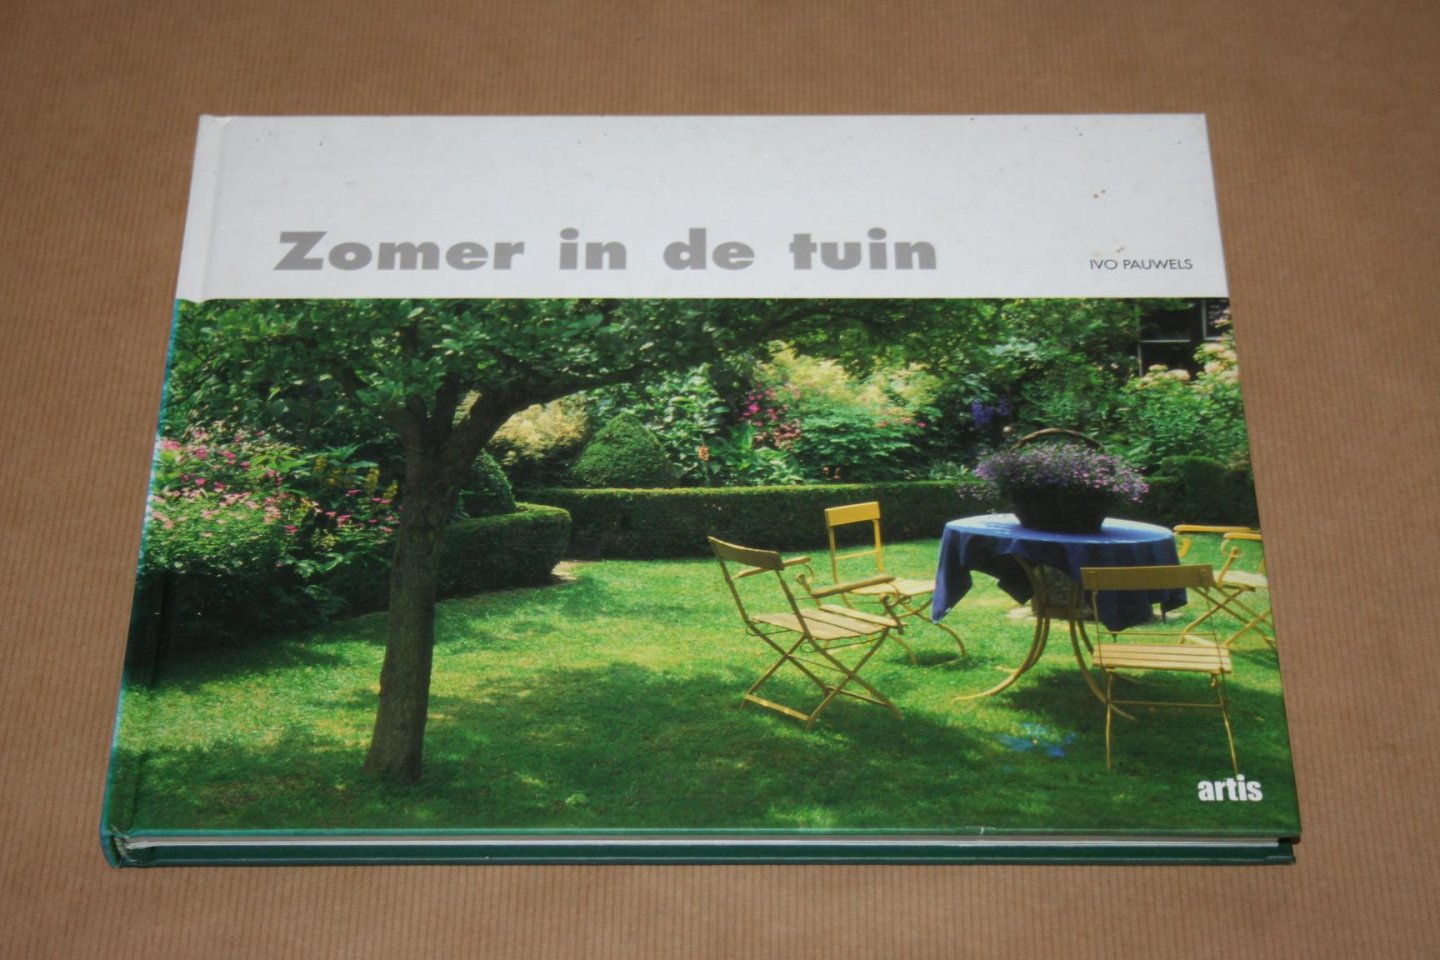 Ivo Pauwels - Zomer in de tuin